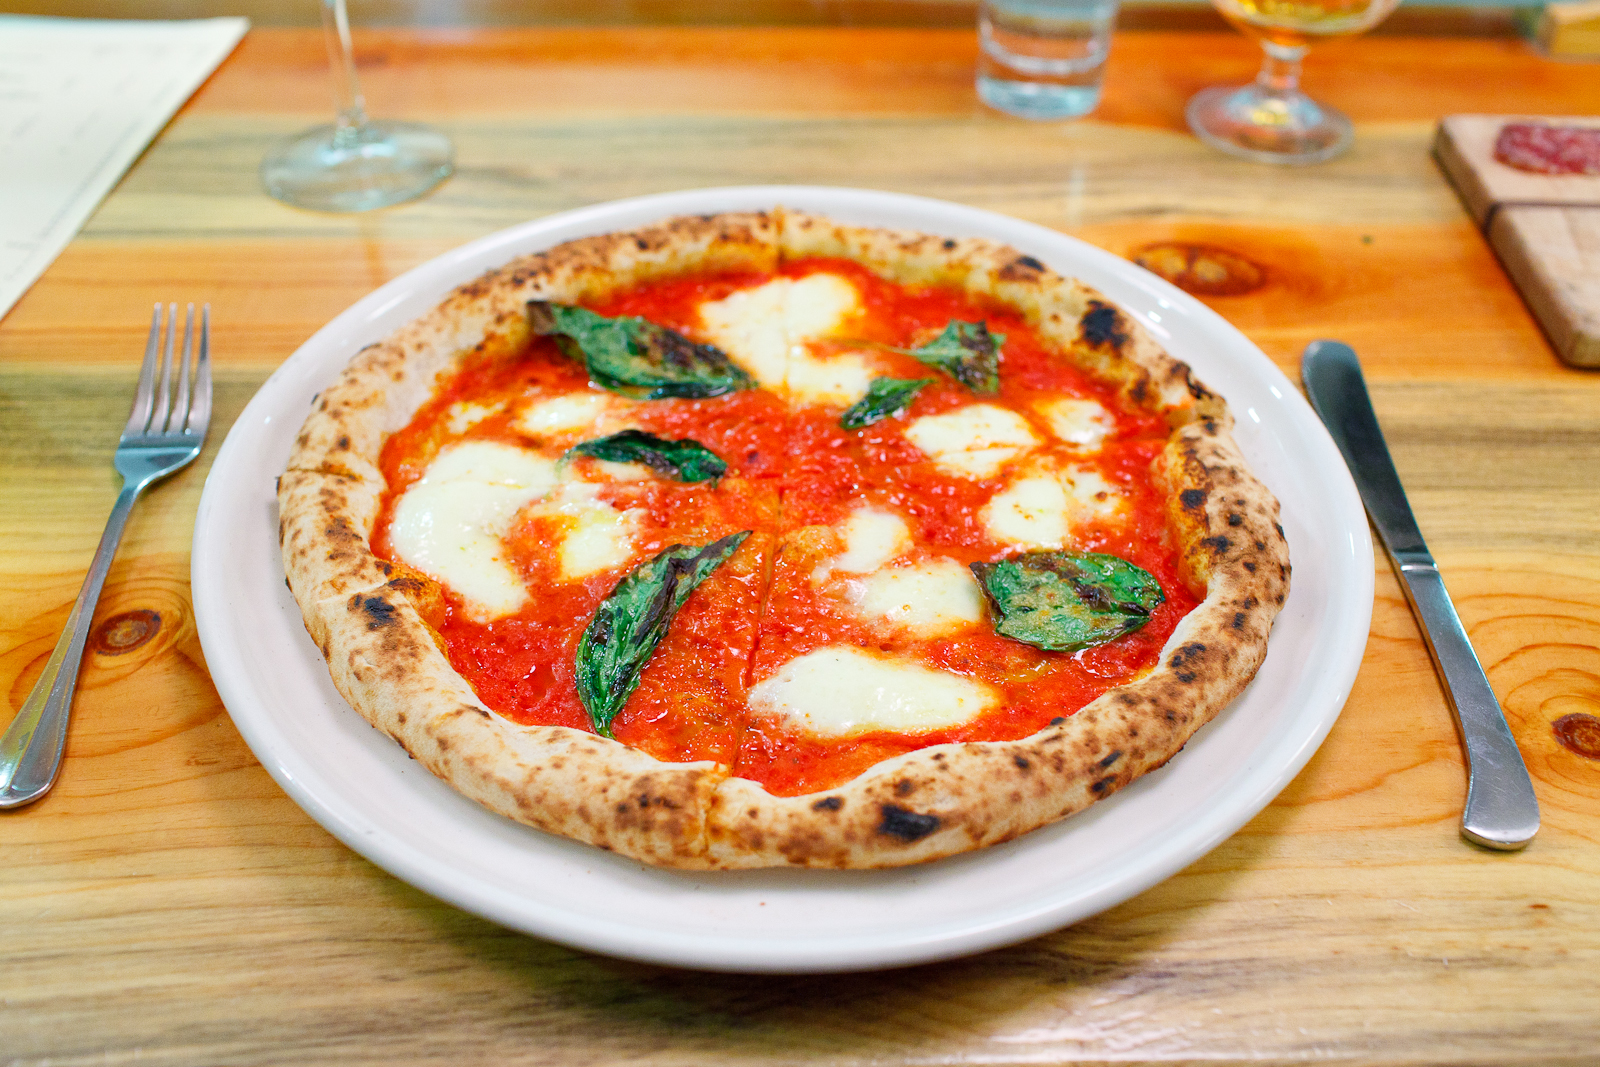 Pizza daisy - tomato sauce, mozzarella, basil, olive oil ($12)